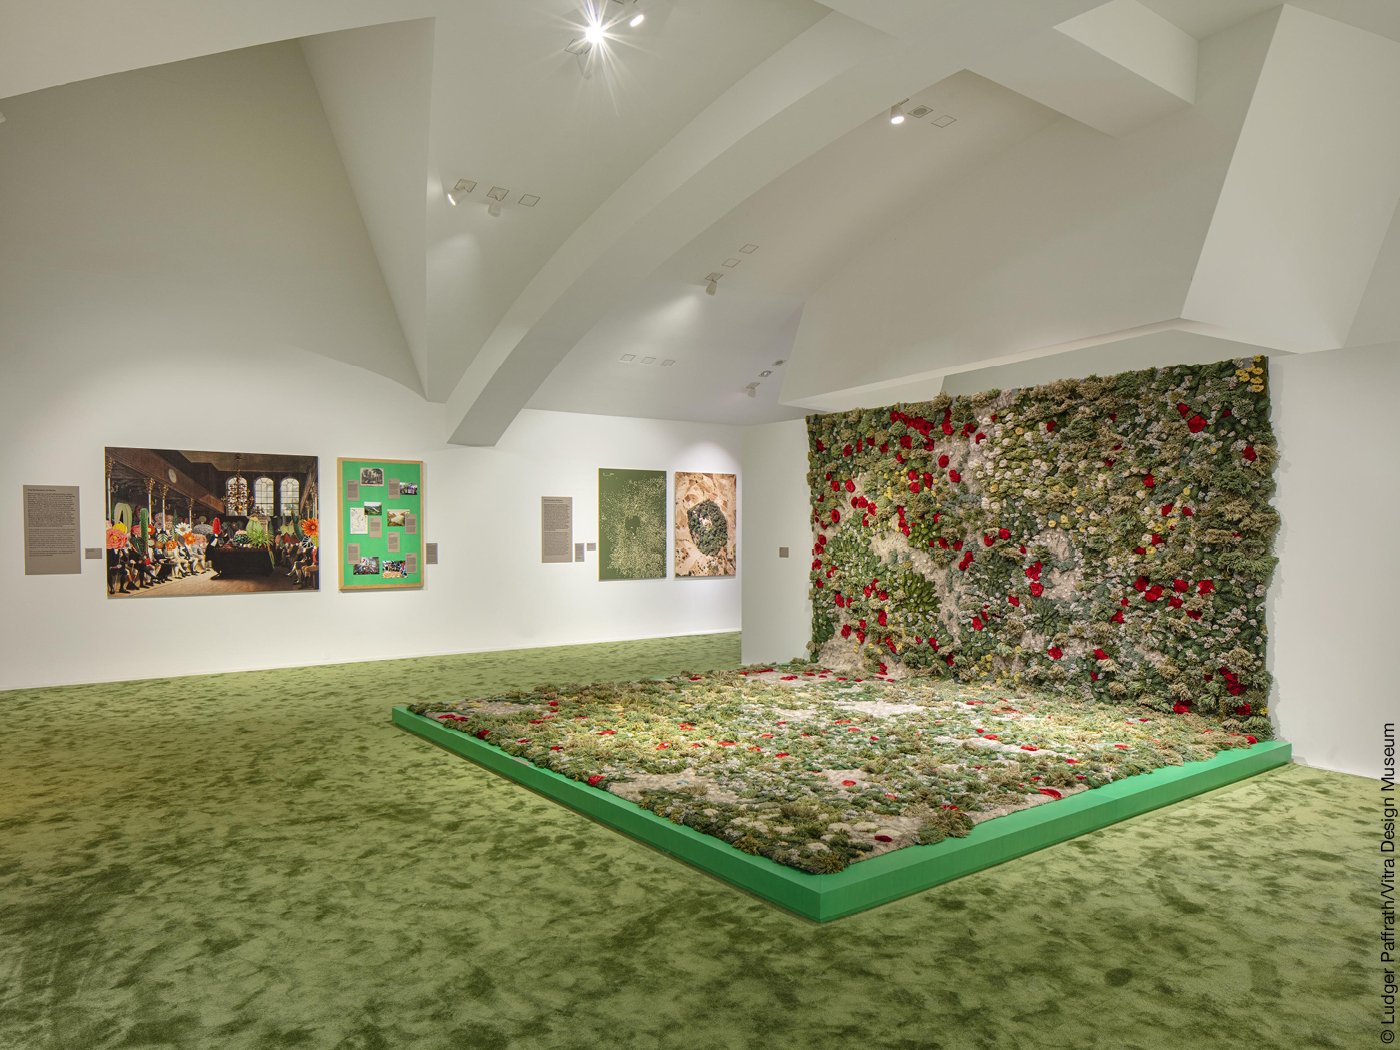 Ausstellungsraum mit grünem Teppich